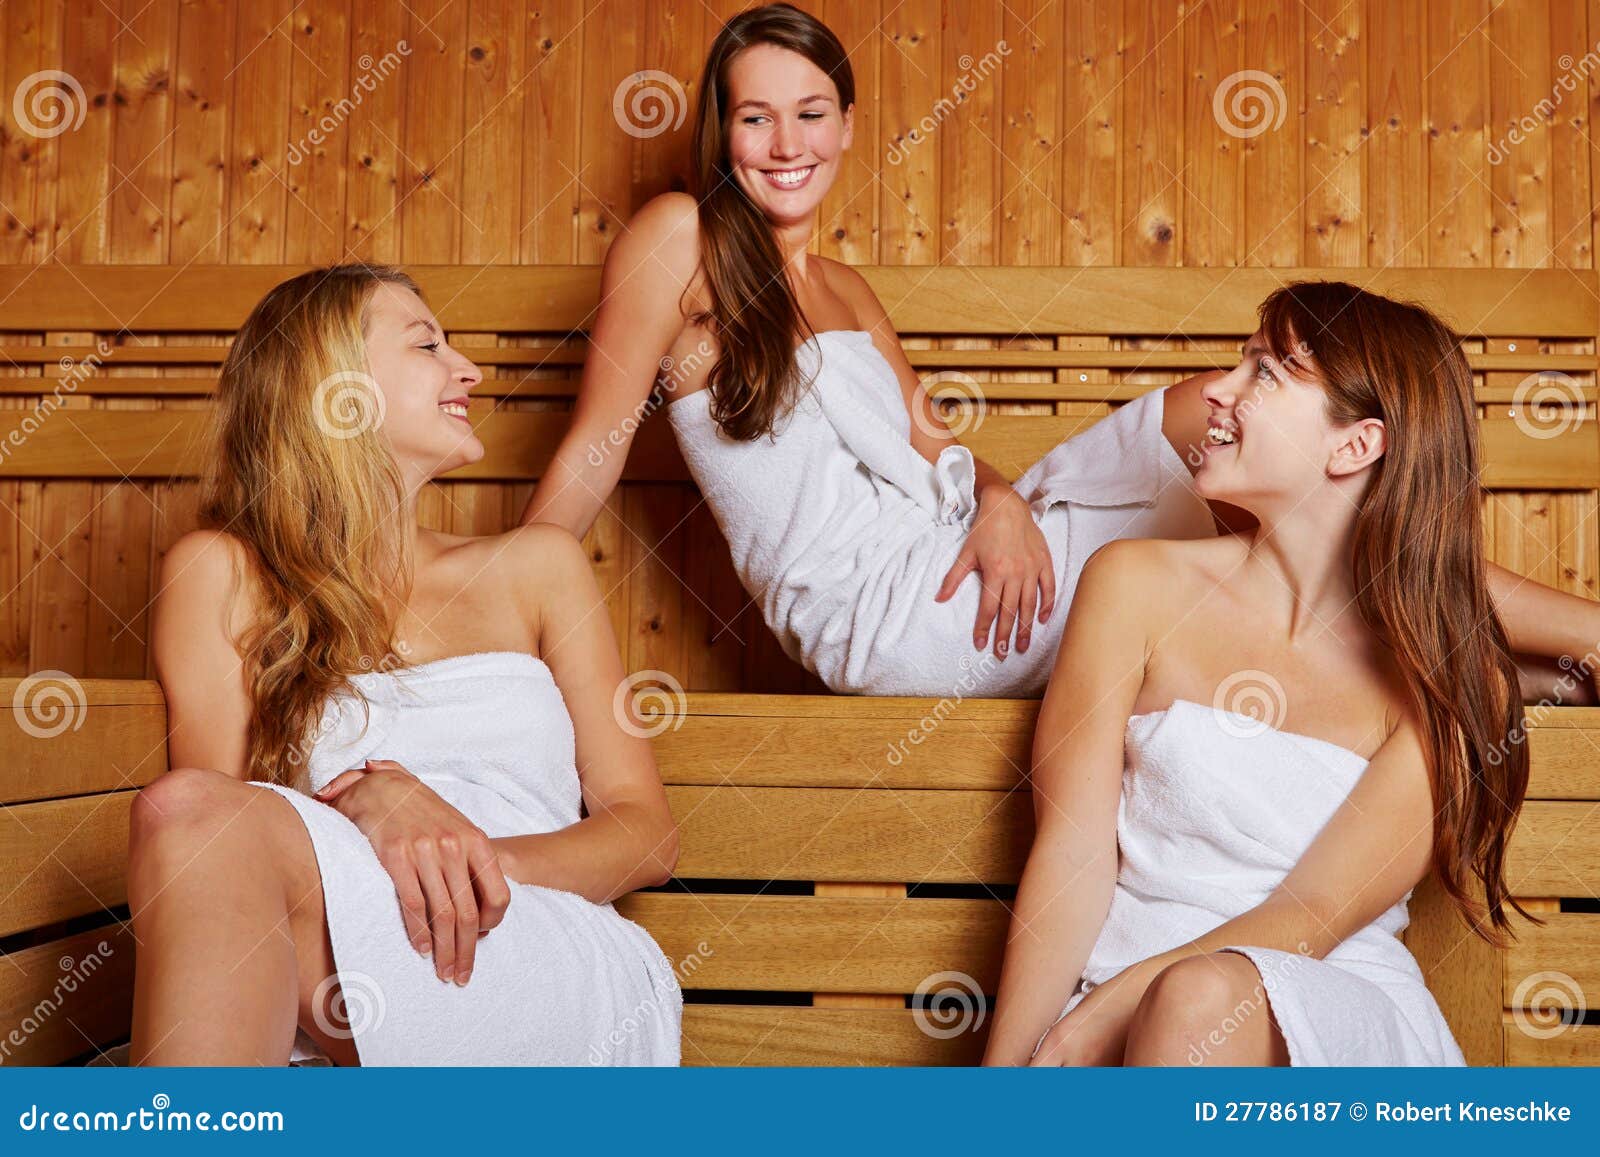 Drie Vrouwen Die In Sauna Zitten Stock Afbeelding Afbeelding 